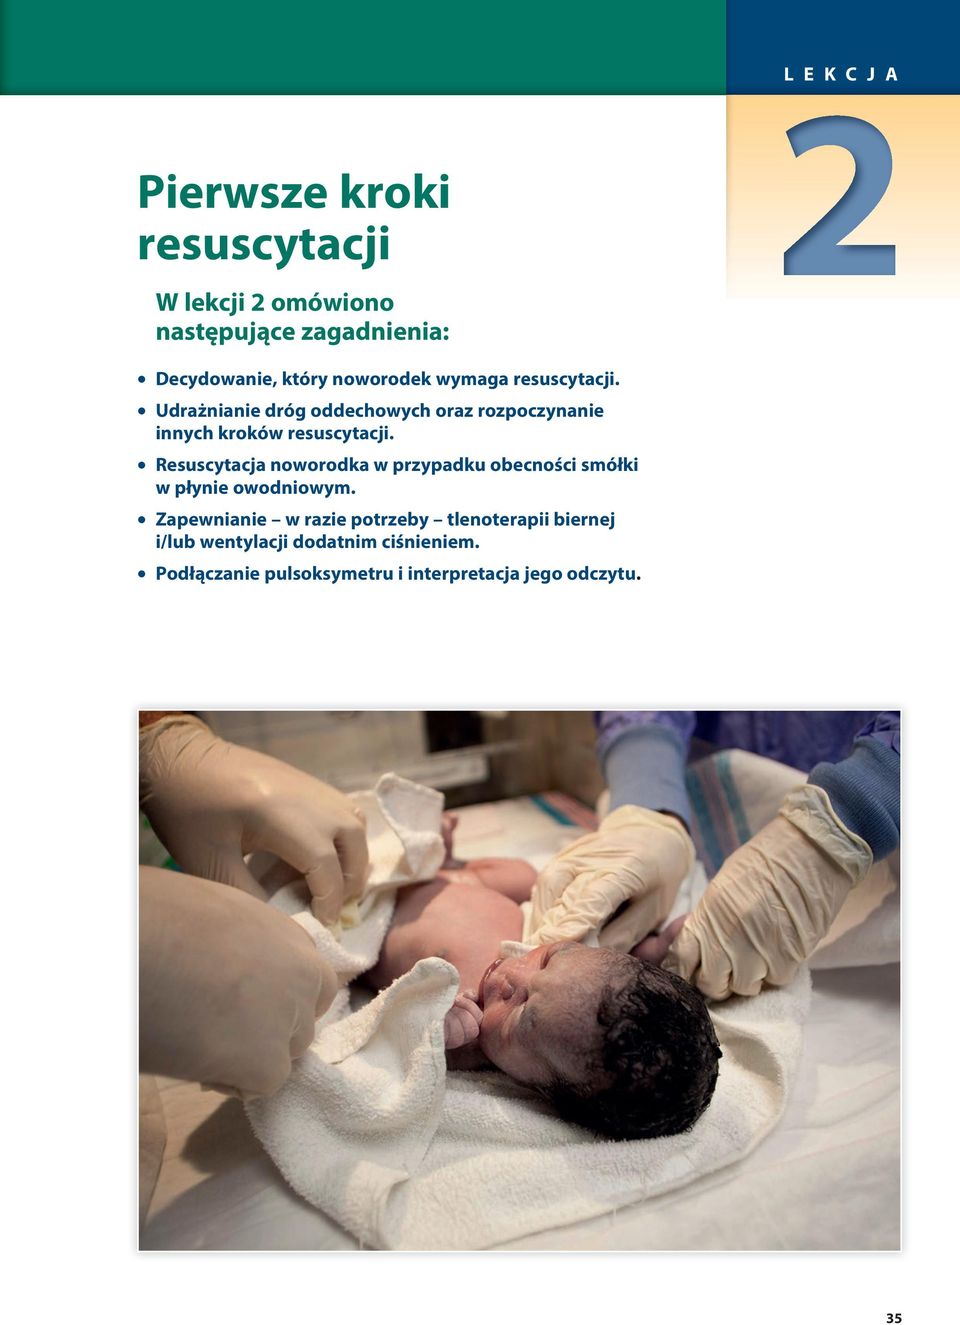 Resuscytacja noworodka w przypadku obecności smółki w płynie owodniowym.